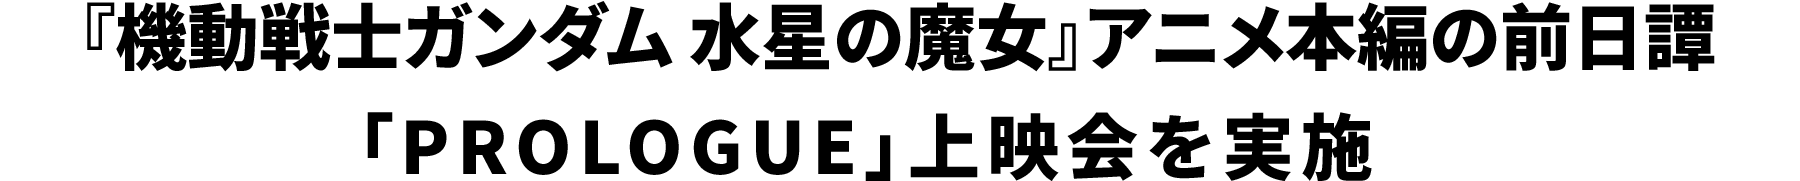 『機動戦士ガンダム 水星の魔女』アニメ本編の前日譚 PROLOGUE上映会を実施